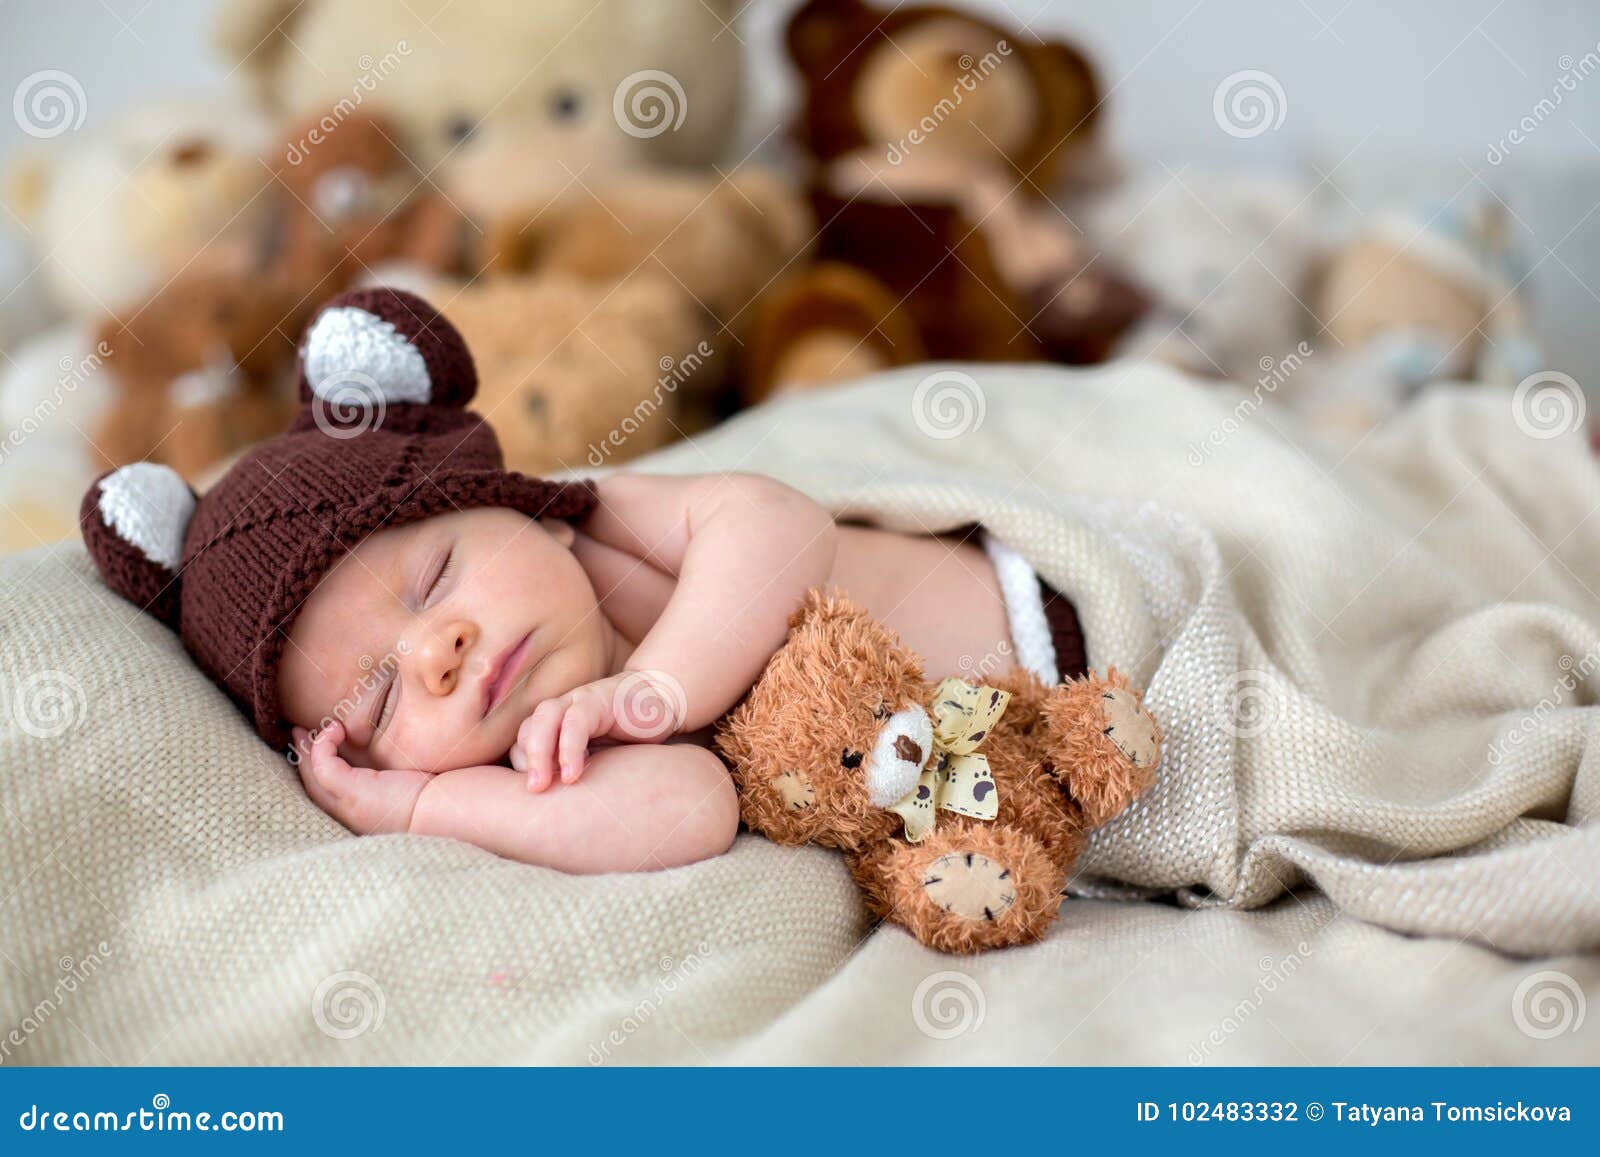 Pequeño Bebé Recién Nacido, Durmiendo Con El Oso De Peluche En Casa En Cama  Foto de archivo - Imagen de condiciones, lindo: 102483332